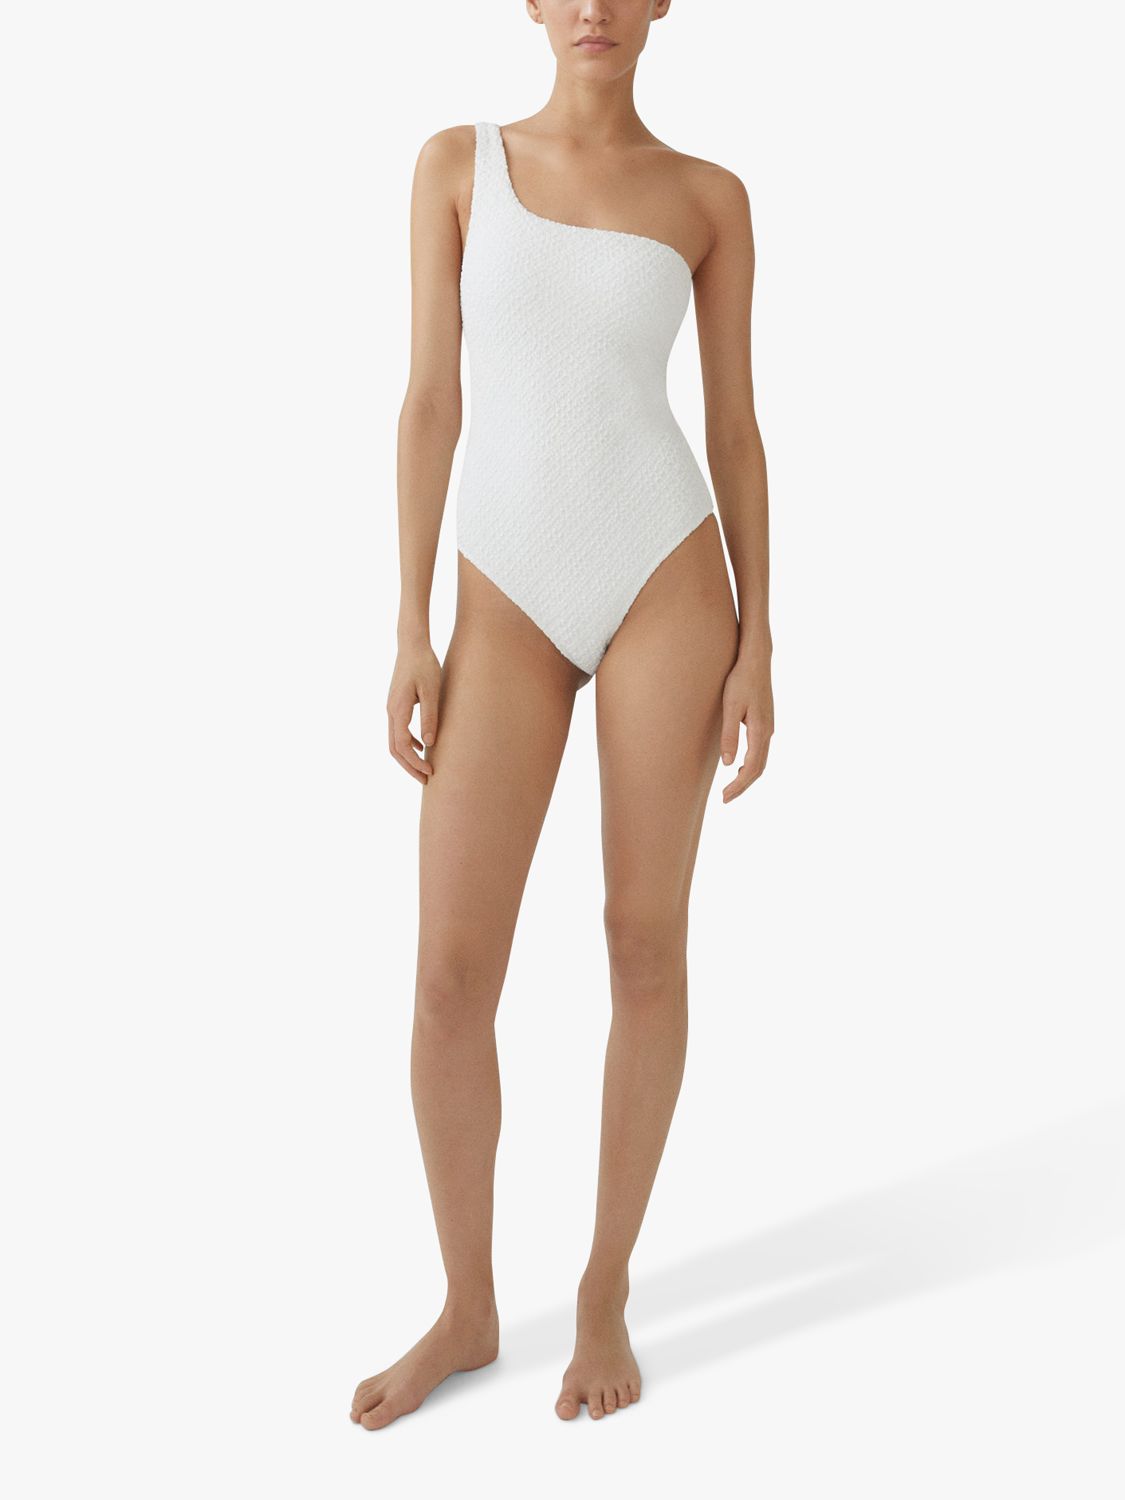 Mango Salada  Asymmetrical Textured Swimsuit, White, L